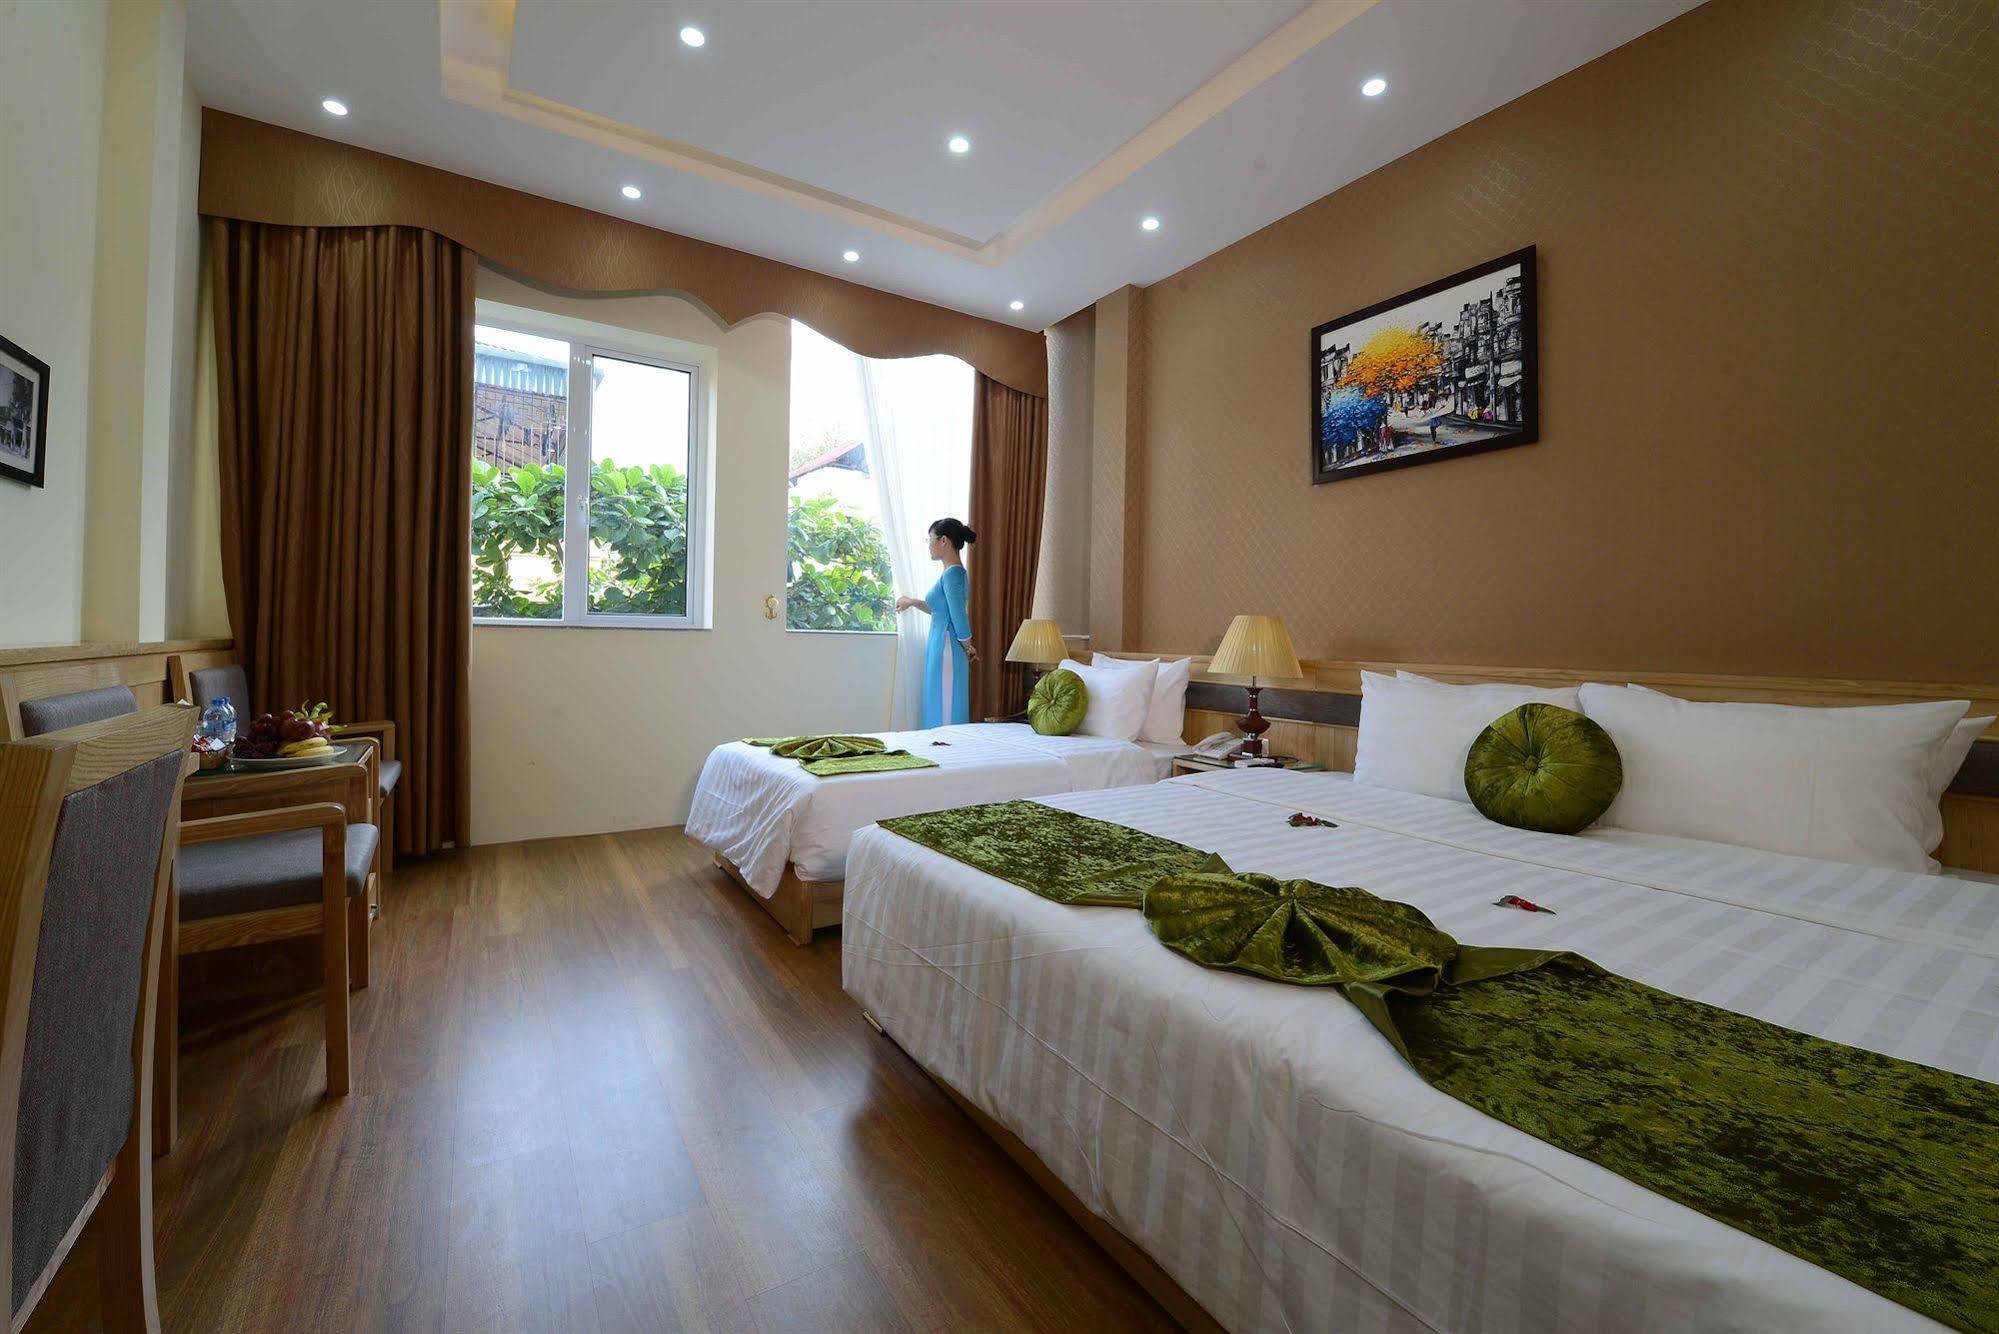 Blue Hanoi Inn Hotel Exteriér fotografie